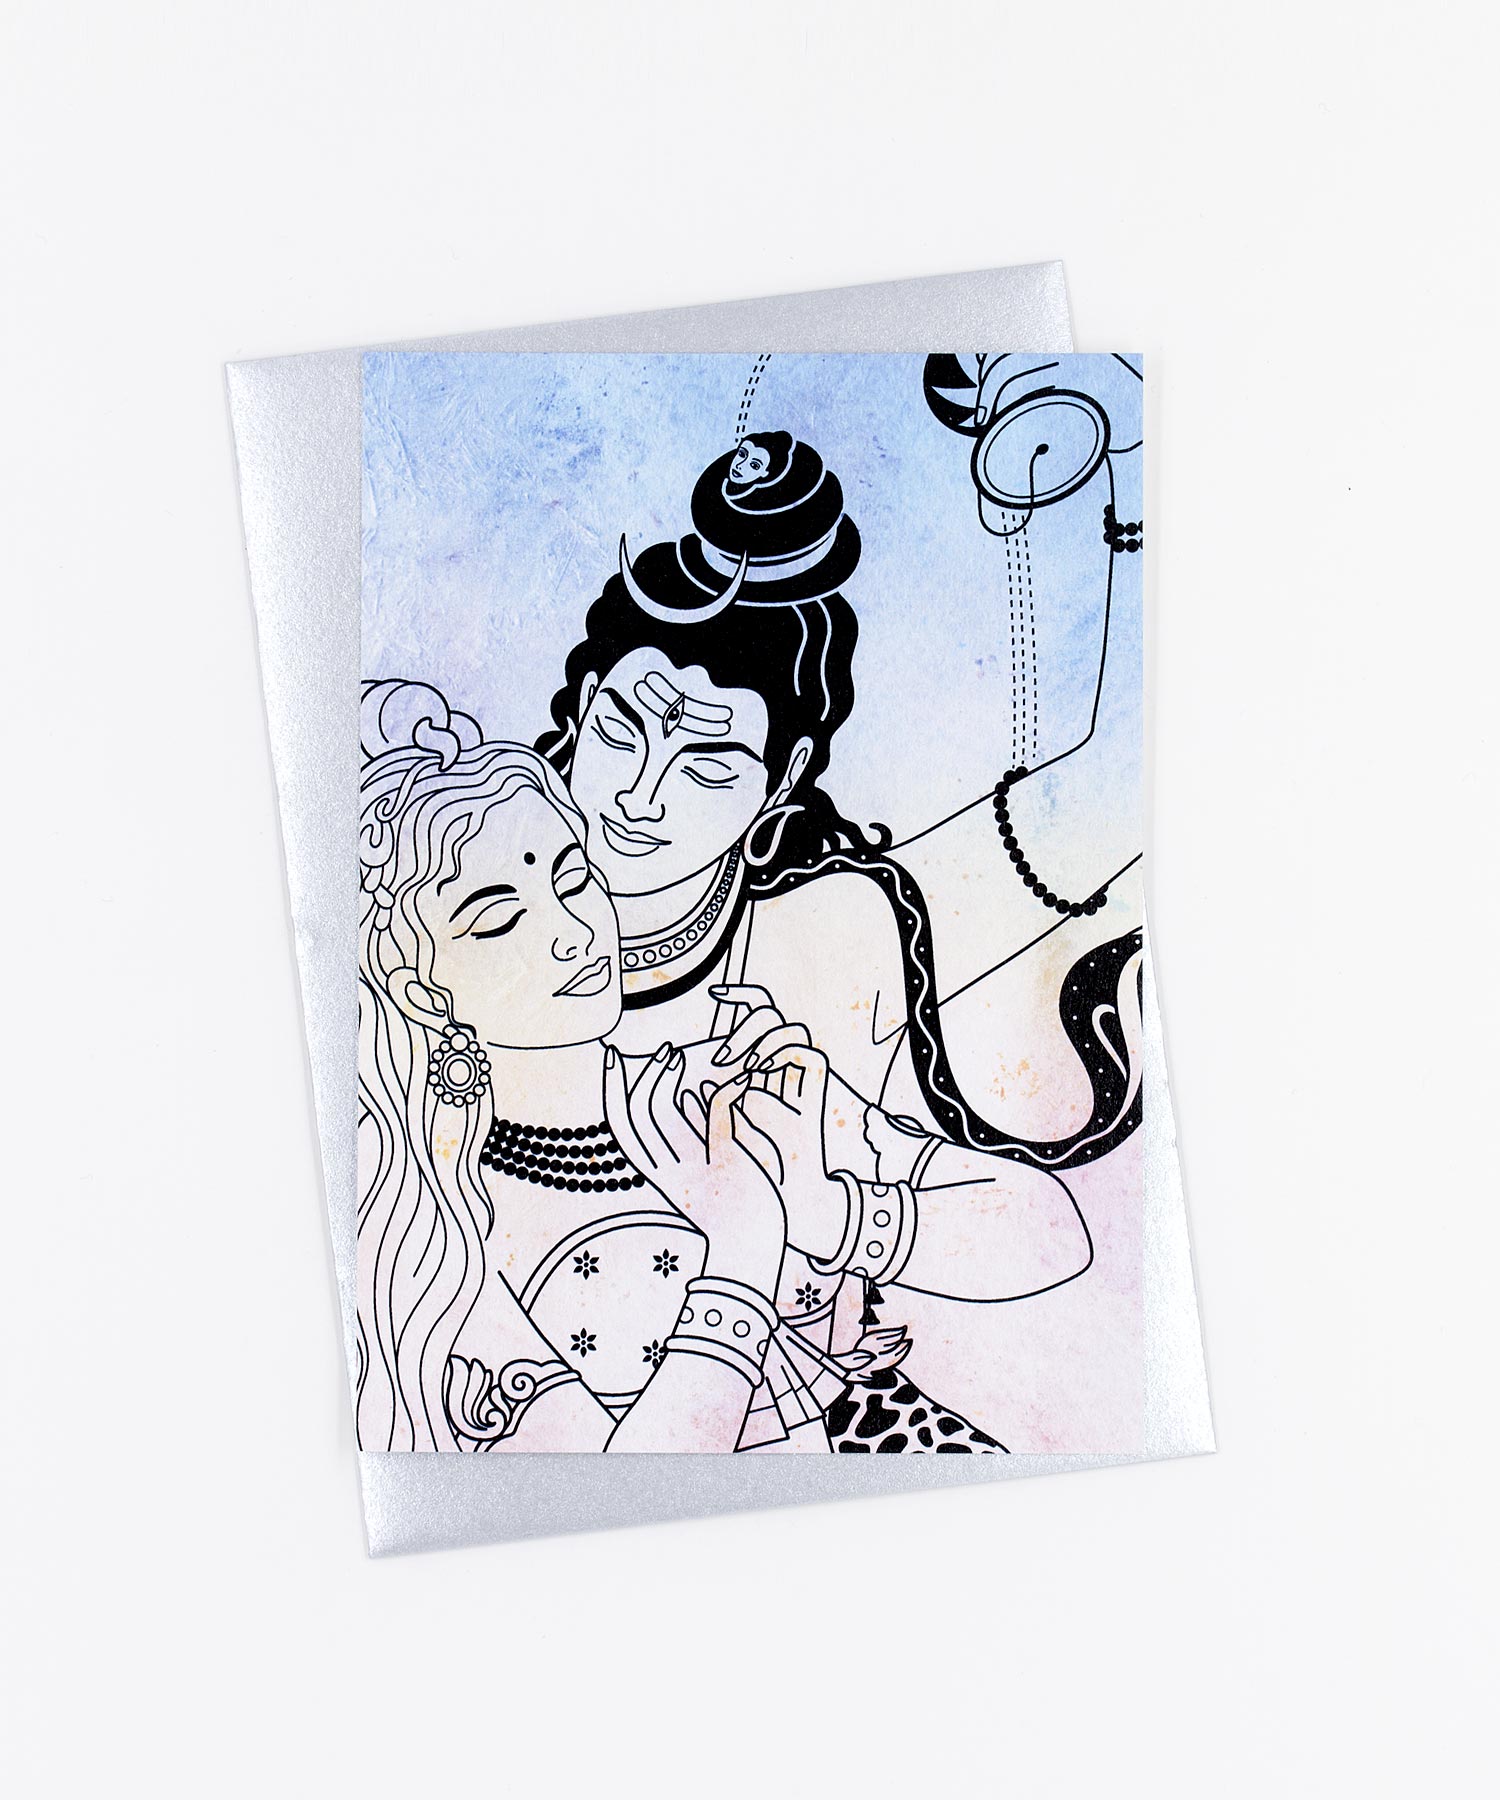 Yoga Postkarte Siva und Parvati